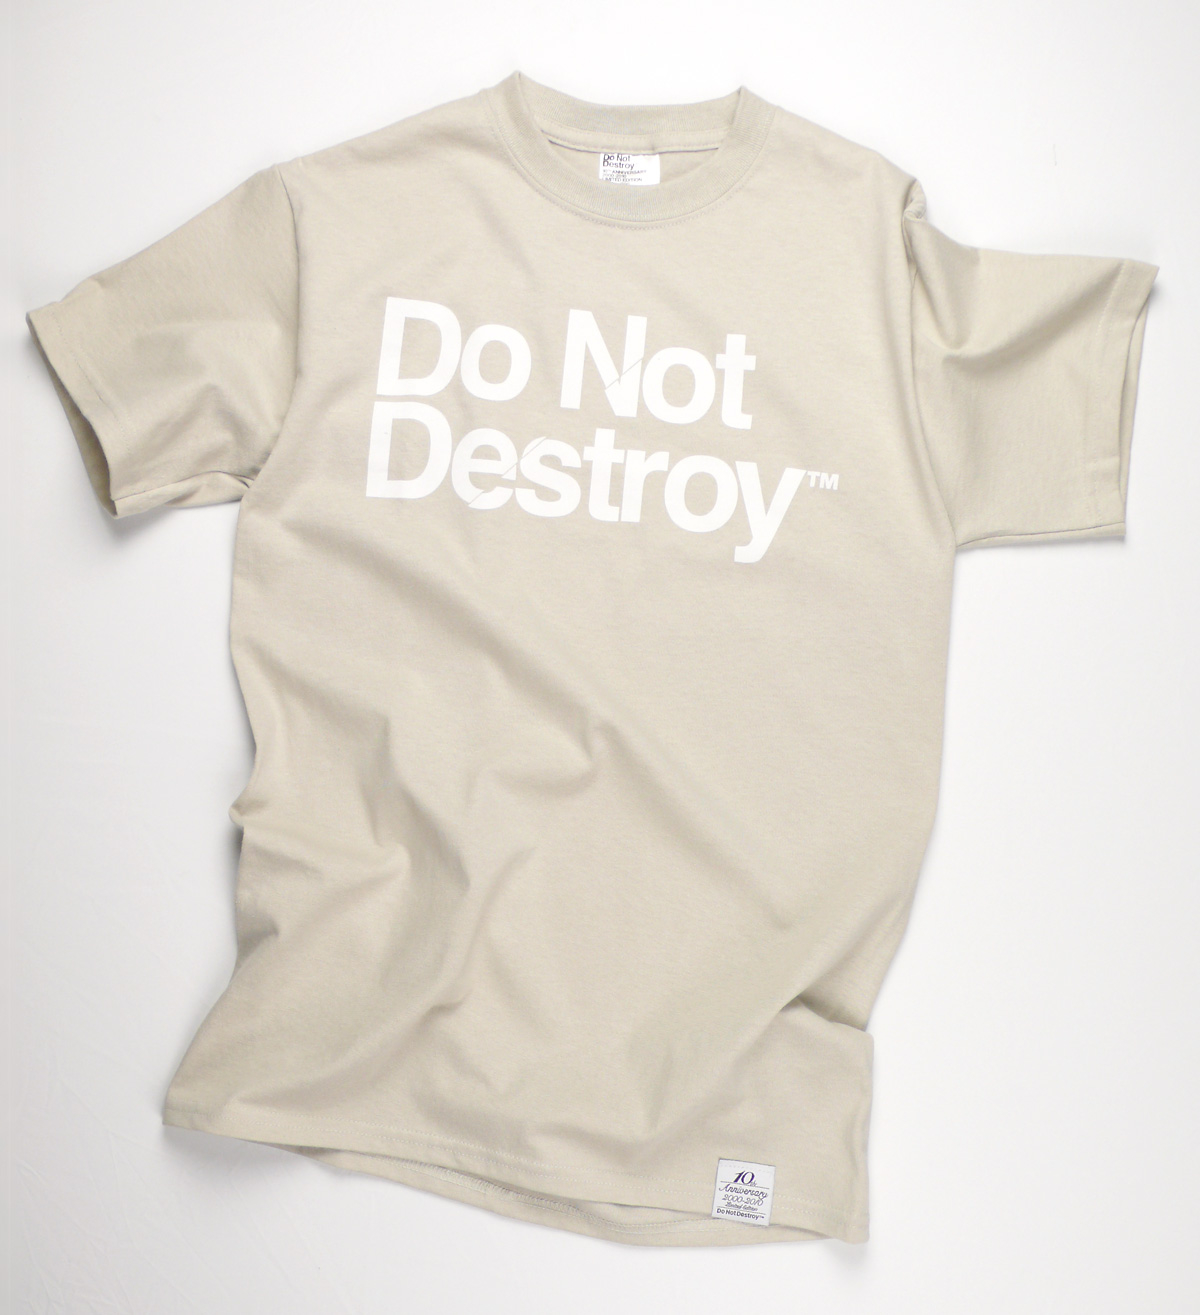 Do Not Destroy Sand t-shirt tee